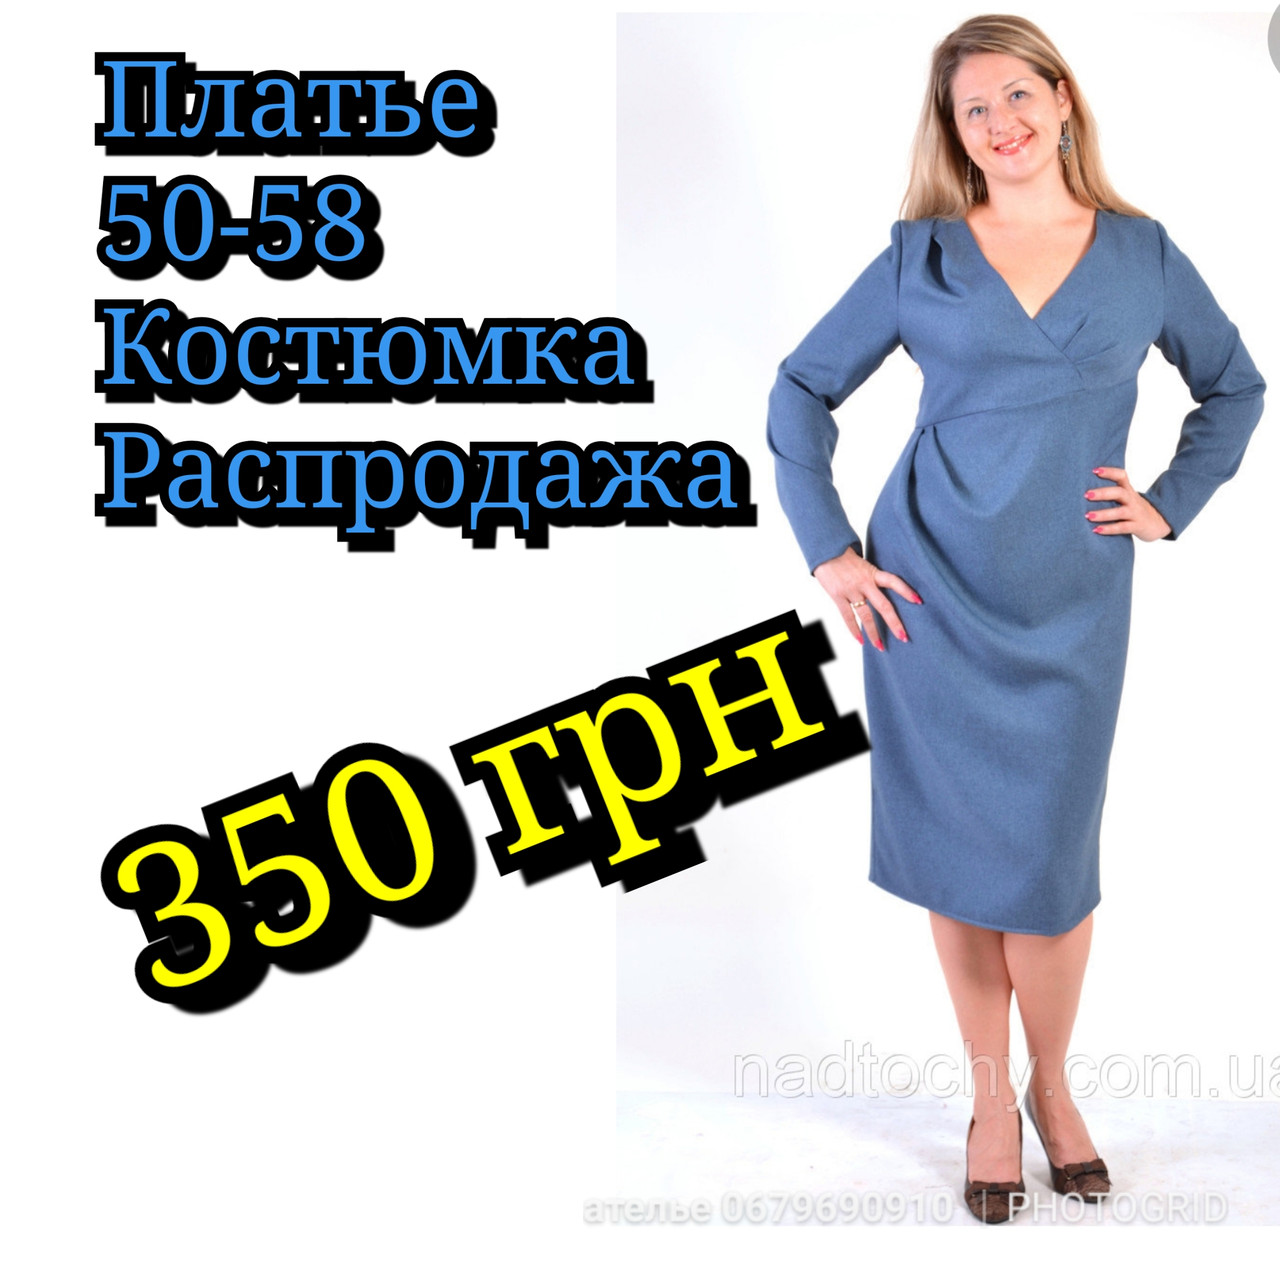 Плаття джинсового кольору блакитне з драпіруванням великі розміри 50-60 р-ри, пл 120.